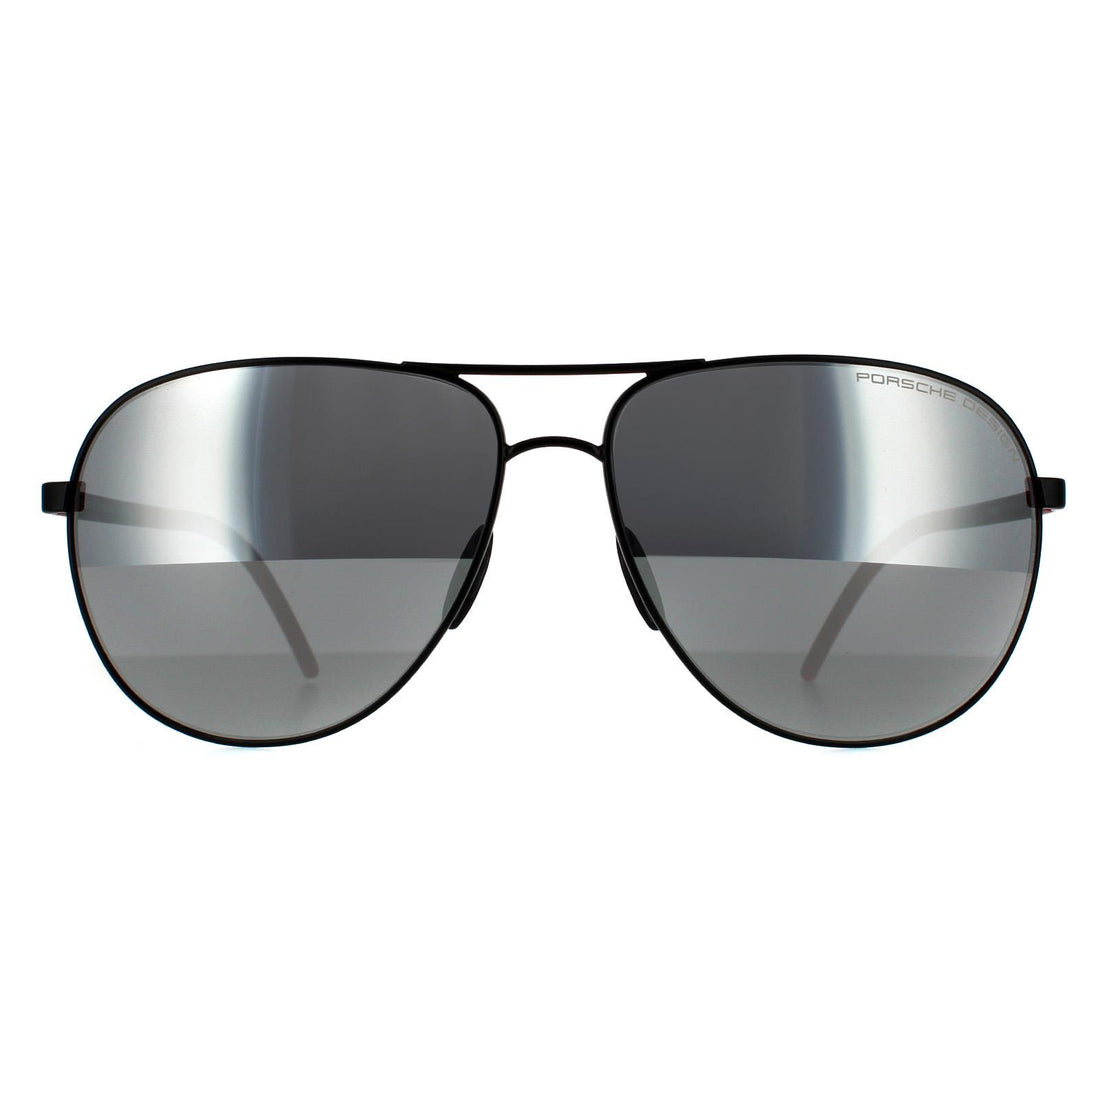 Porsche Design P8651 Sunglasses Black / Silver Mirror Polarized